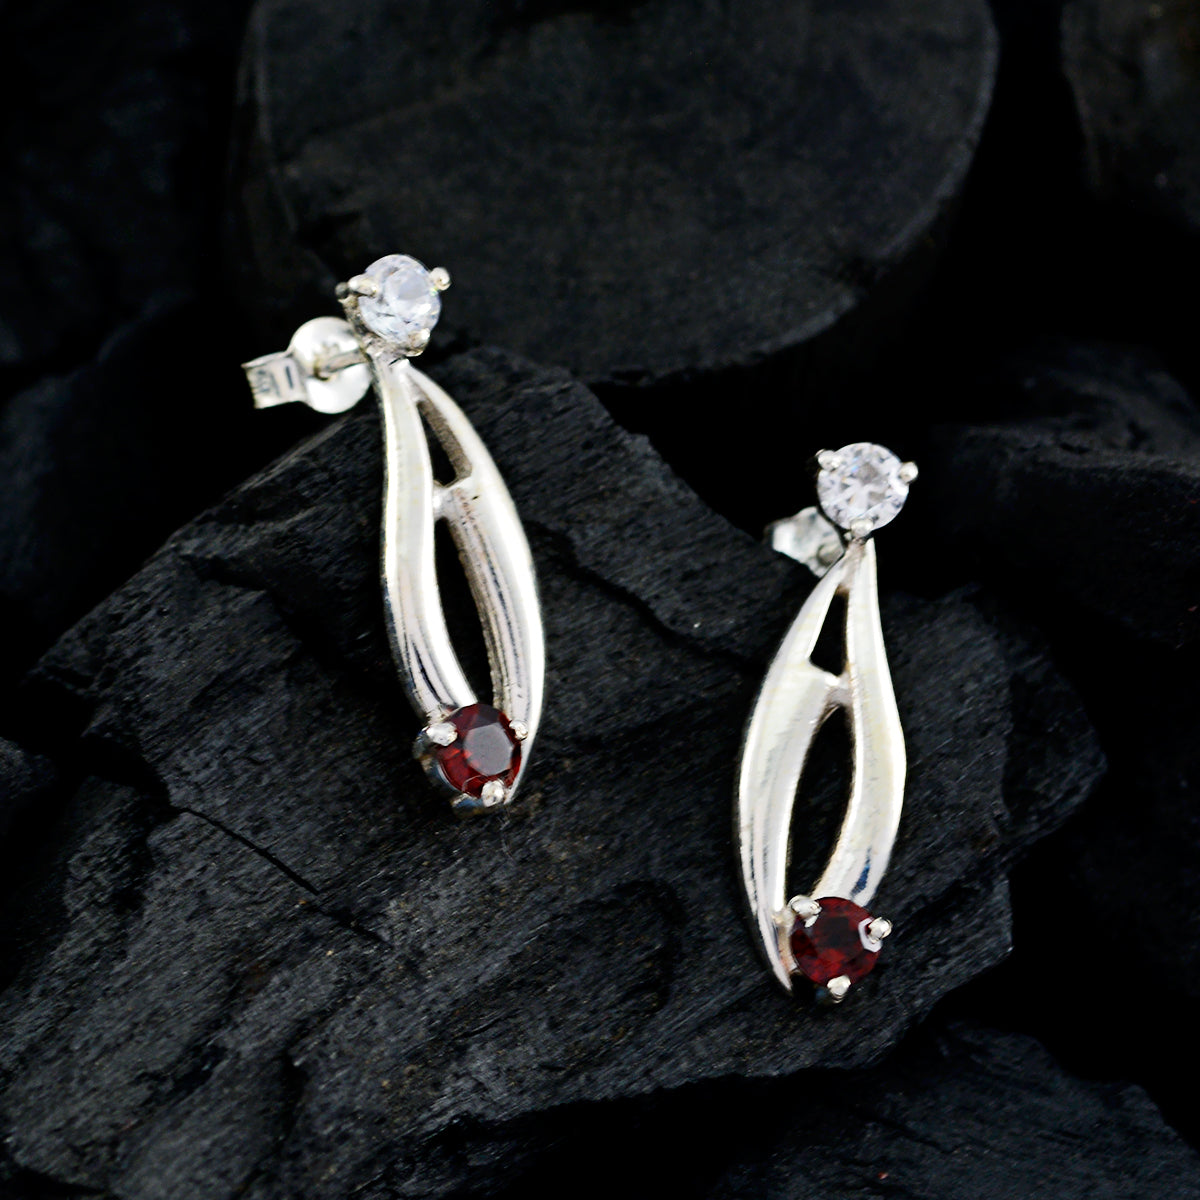 Riyo Good Gemstones round Faceted Red Garnet Silver Earrings grandmom gift